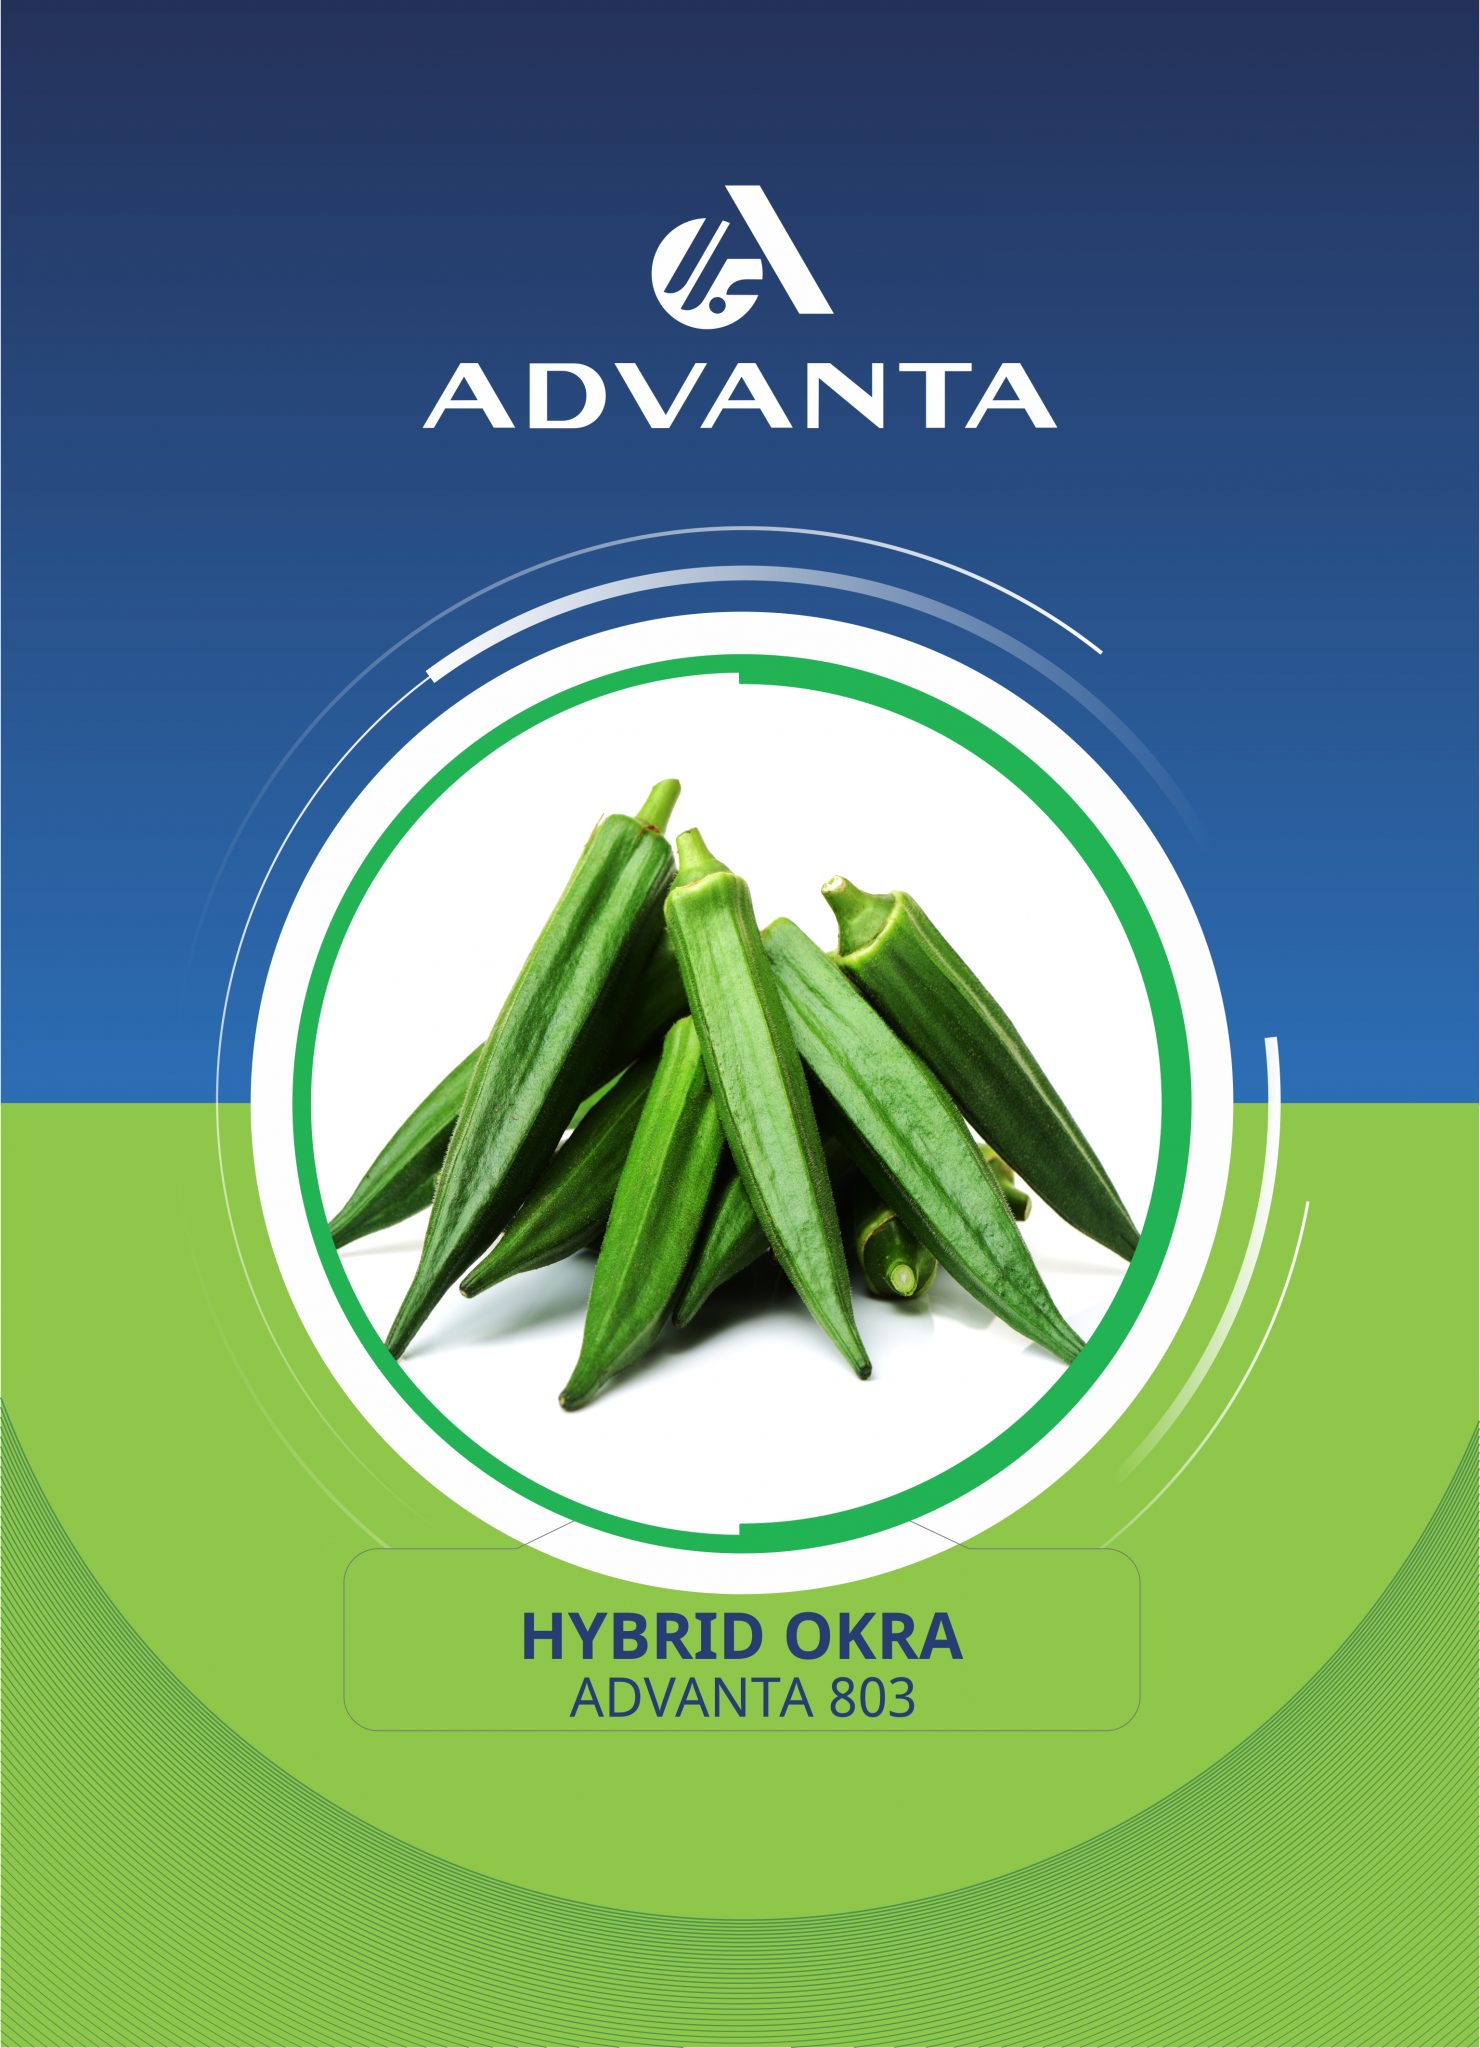 Advanta Seeds